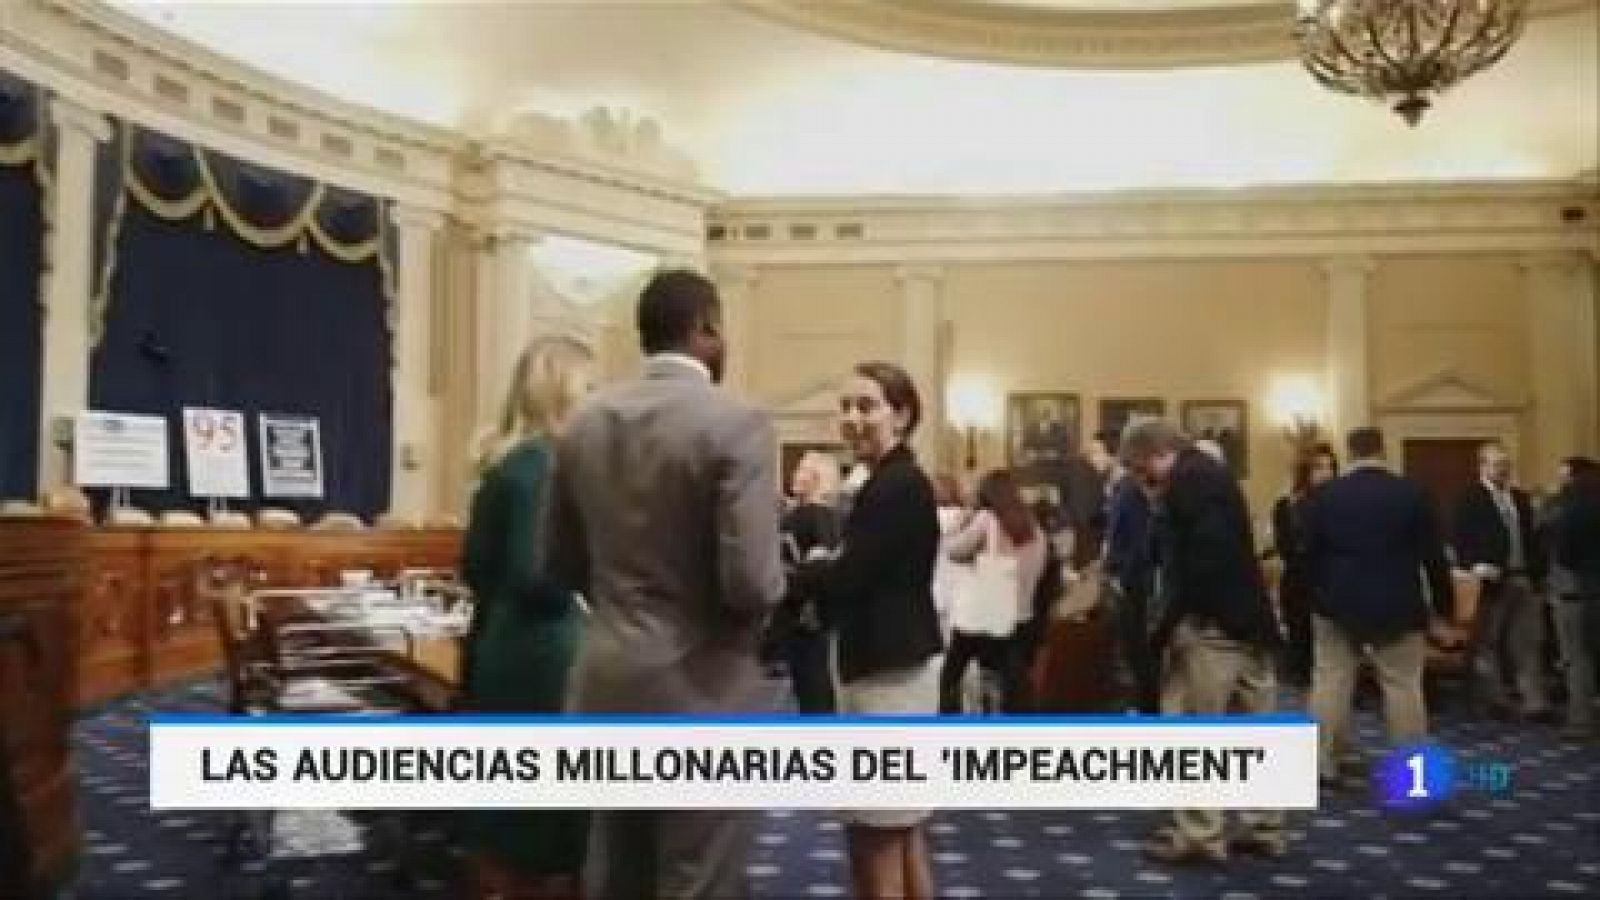 El Impeachment a Trump y su audiencia millonaria - RTVE.es